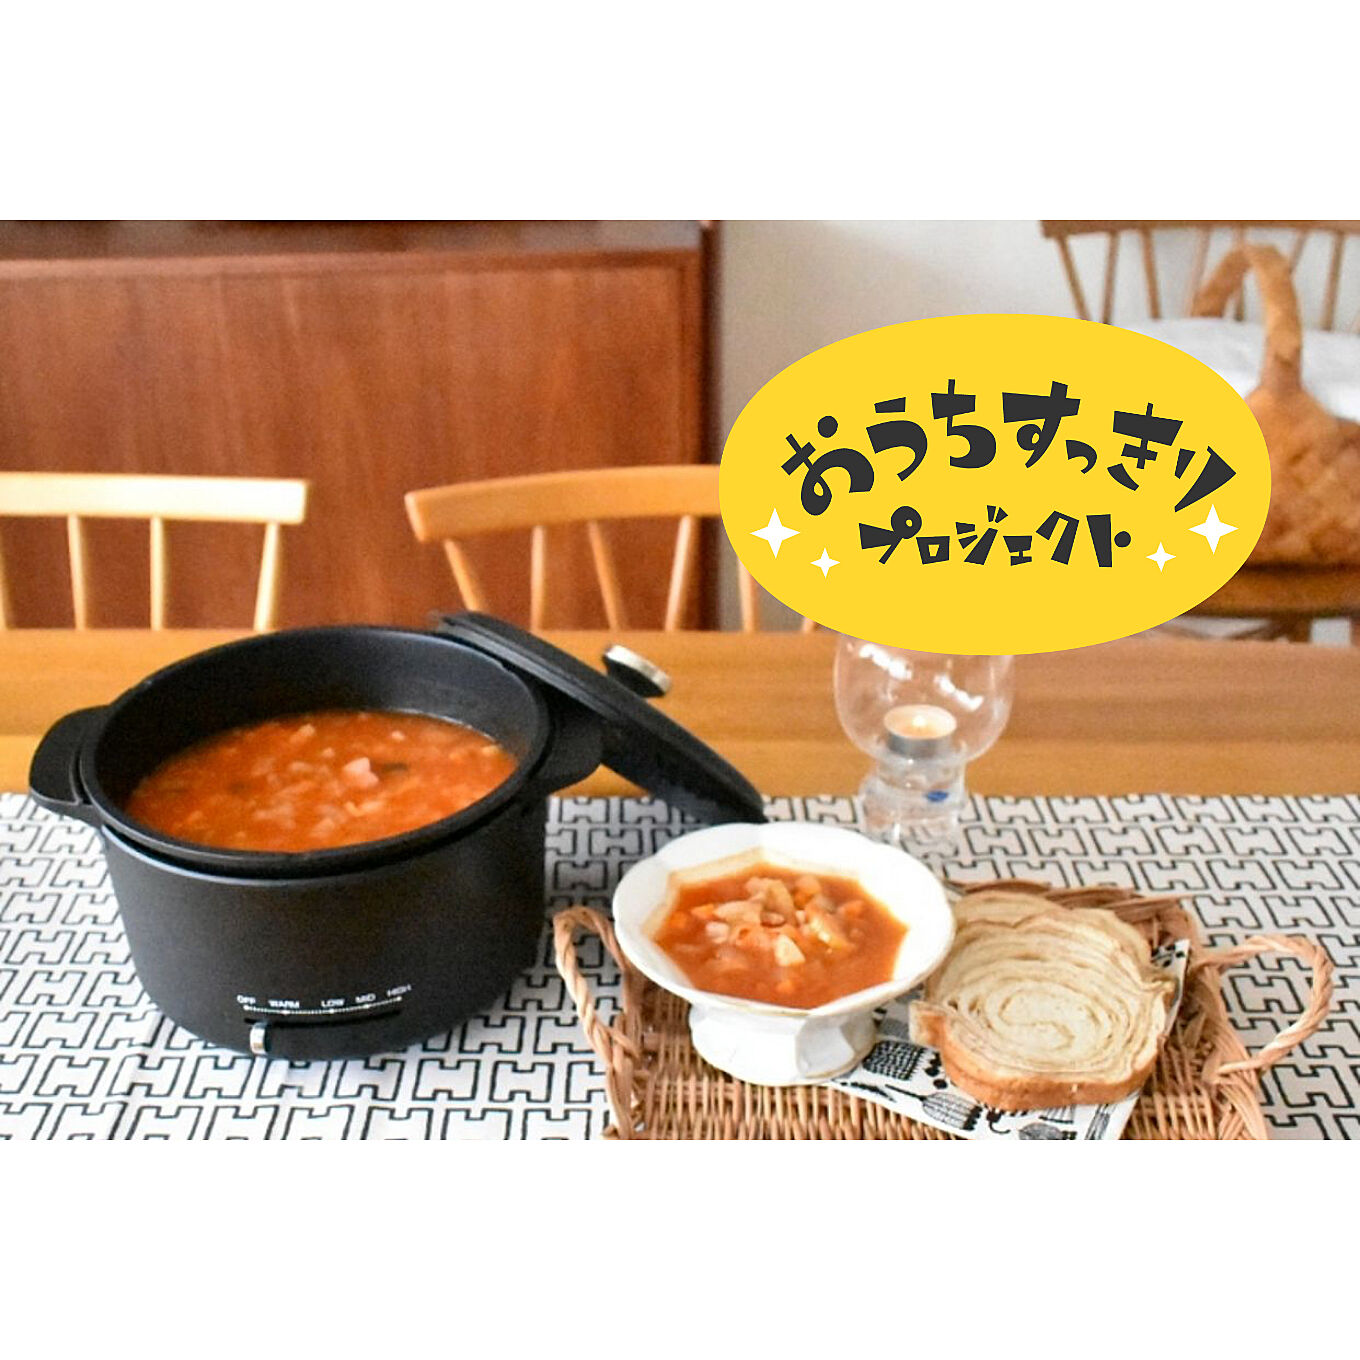 ＜福岡＆大阪で開催＞美味しい＆楽しいワークショップつき無料モニター♡山善の大人気鍋でお料理を楽しみたい方、大募集